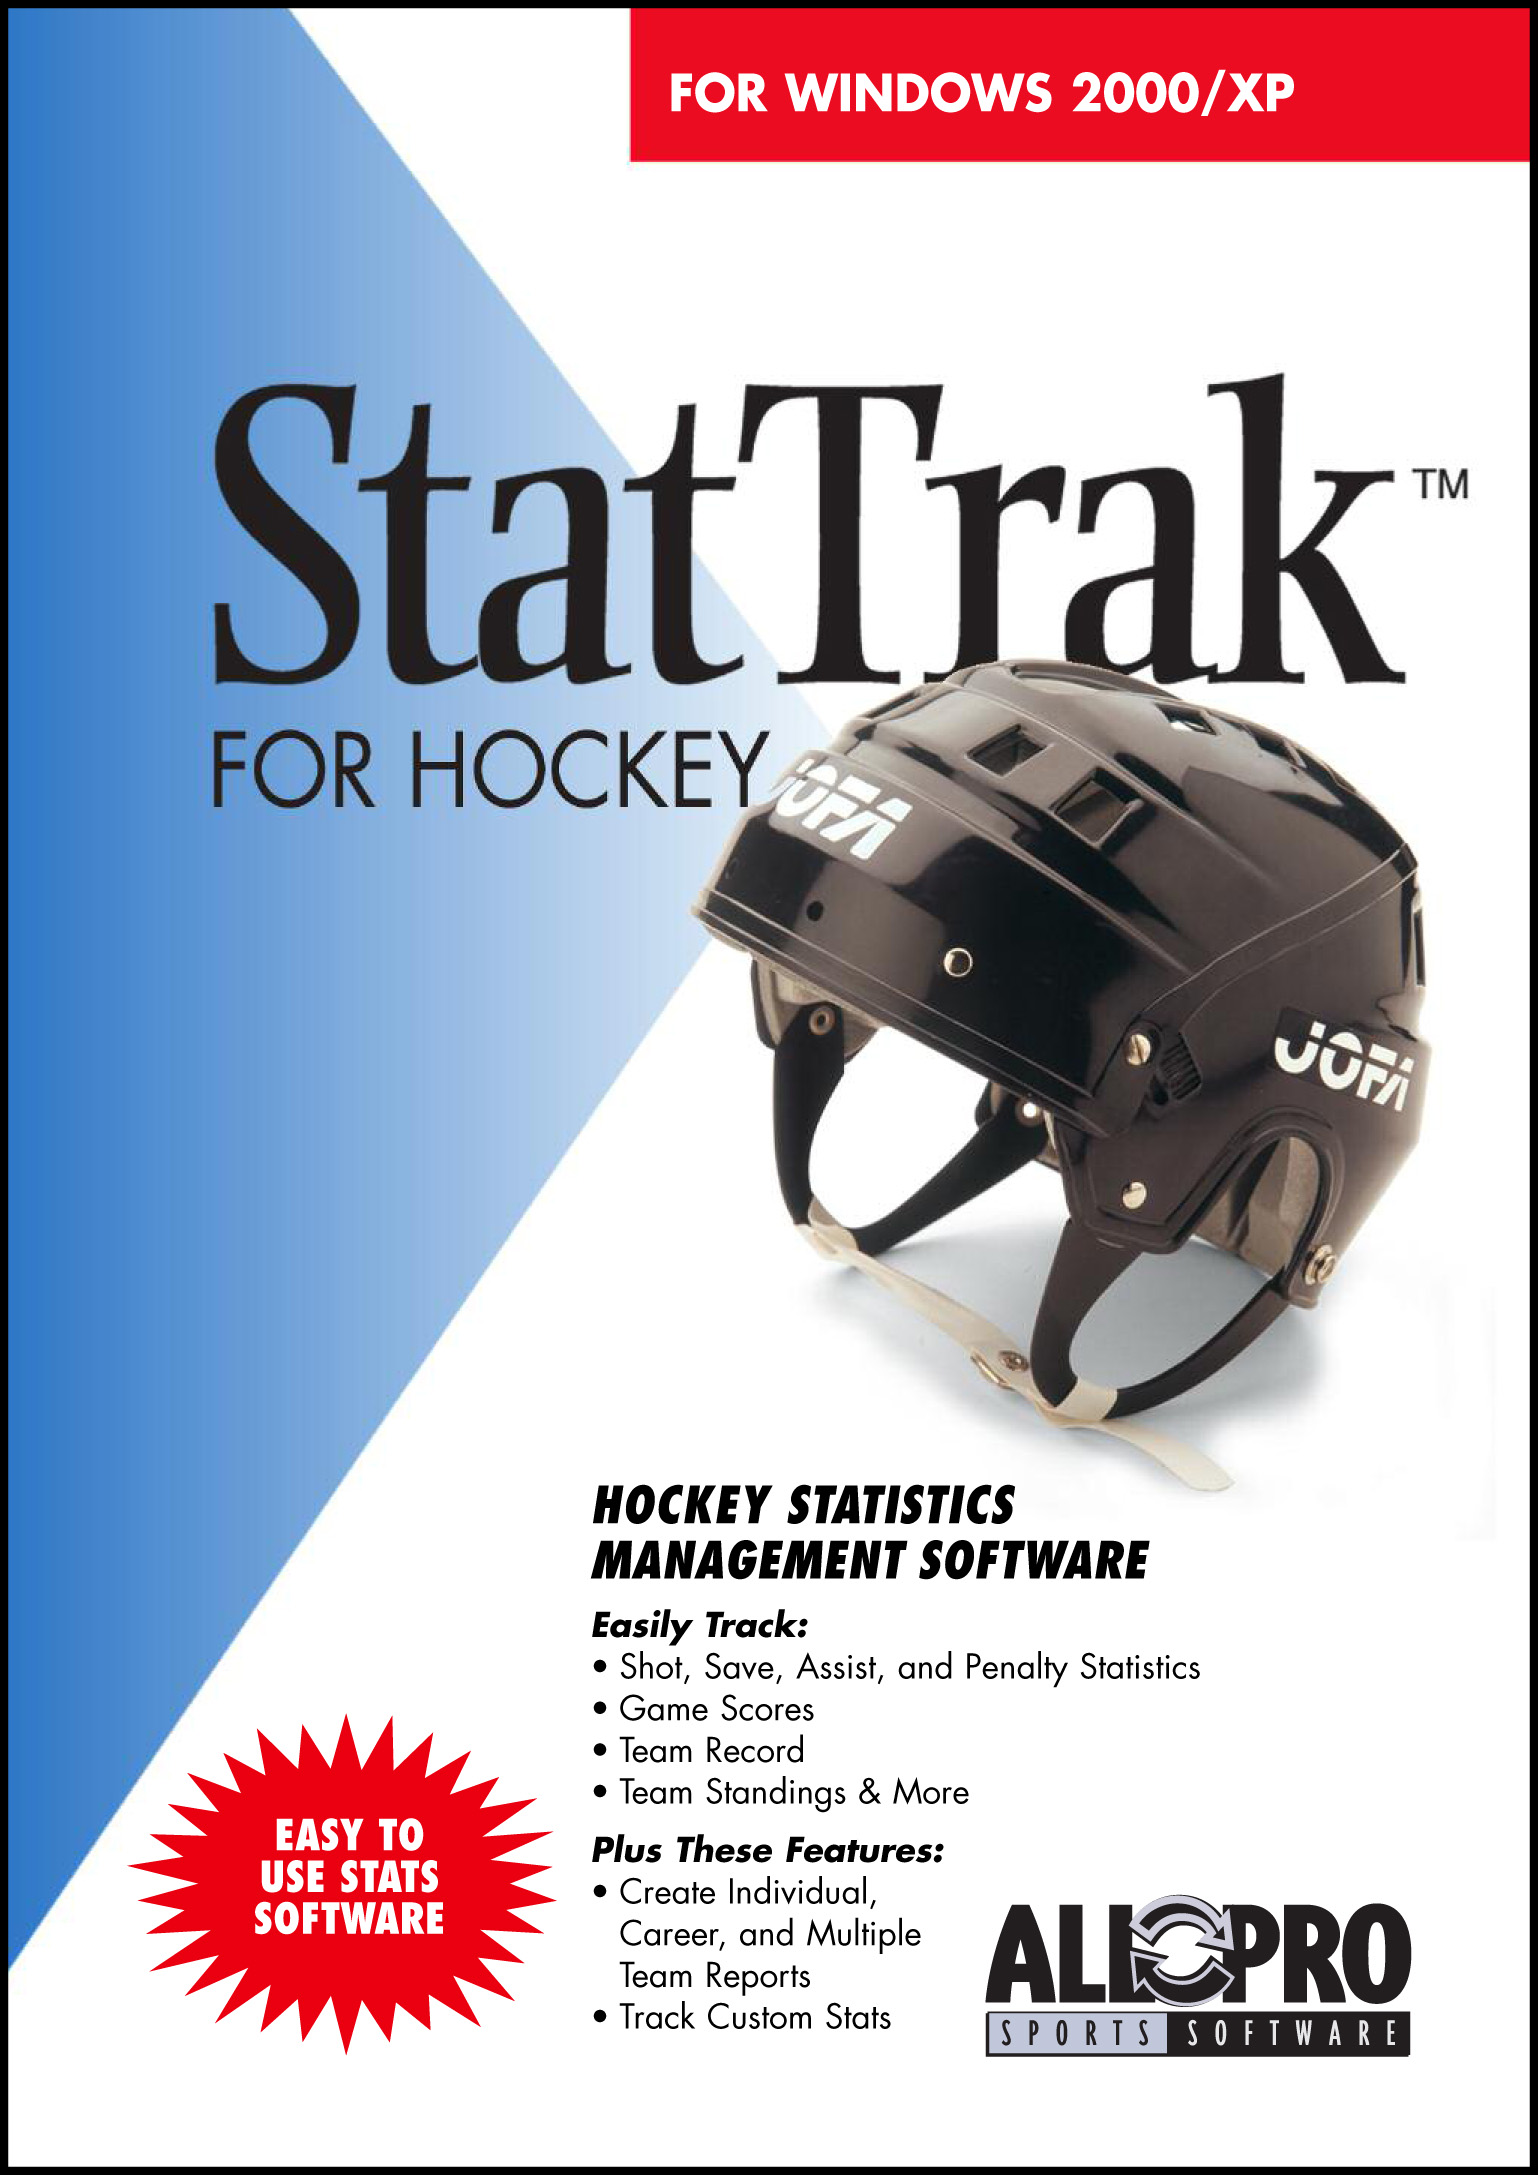 StatTrak for Hockey